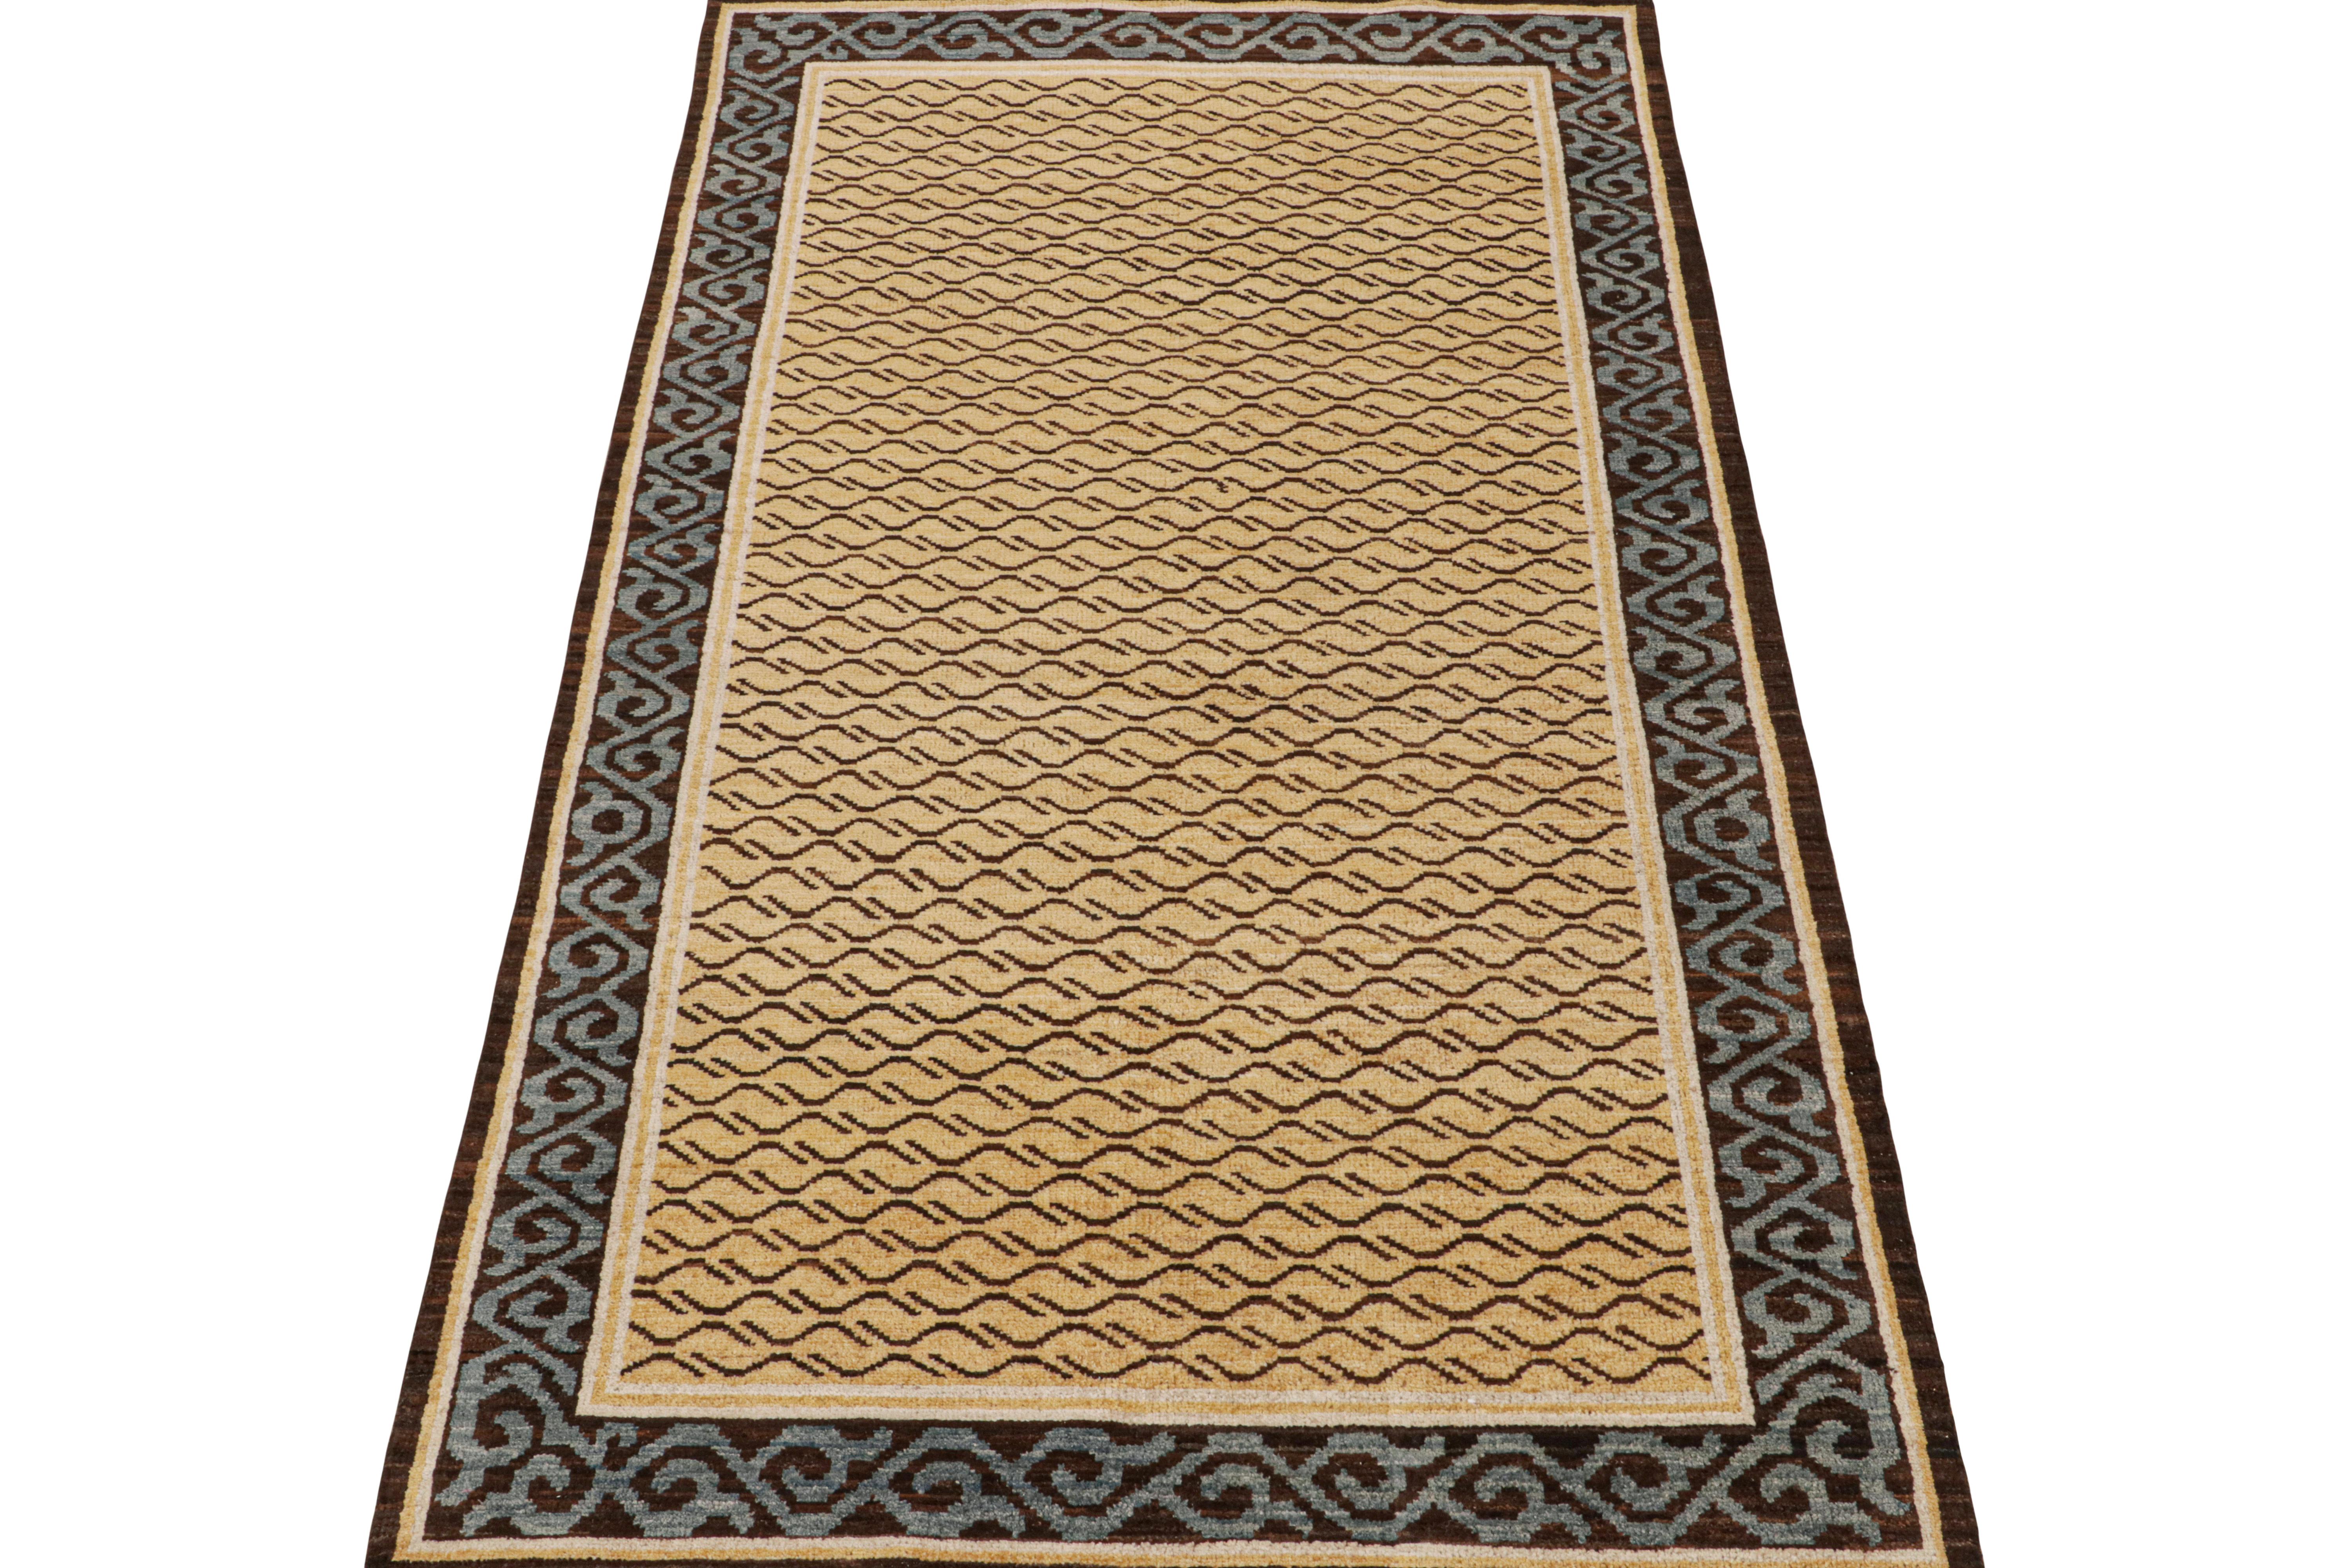 Ce tapis contemporain de 4x8 est un nouvel ajout à la Collection Tigers de Rug & Kilim. Notre collection s'étend sur plusieurs cultures et reprend les styles picturaux emblématiques de l'art populaire et des tapis orientaux faits main. 

Plus loin